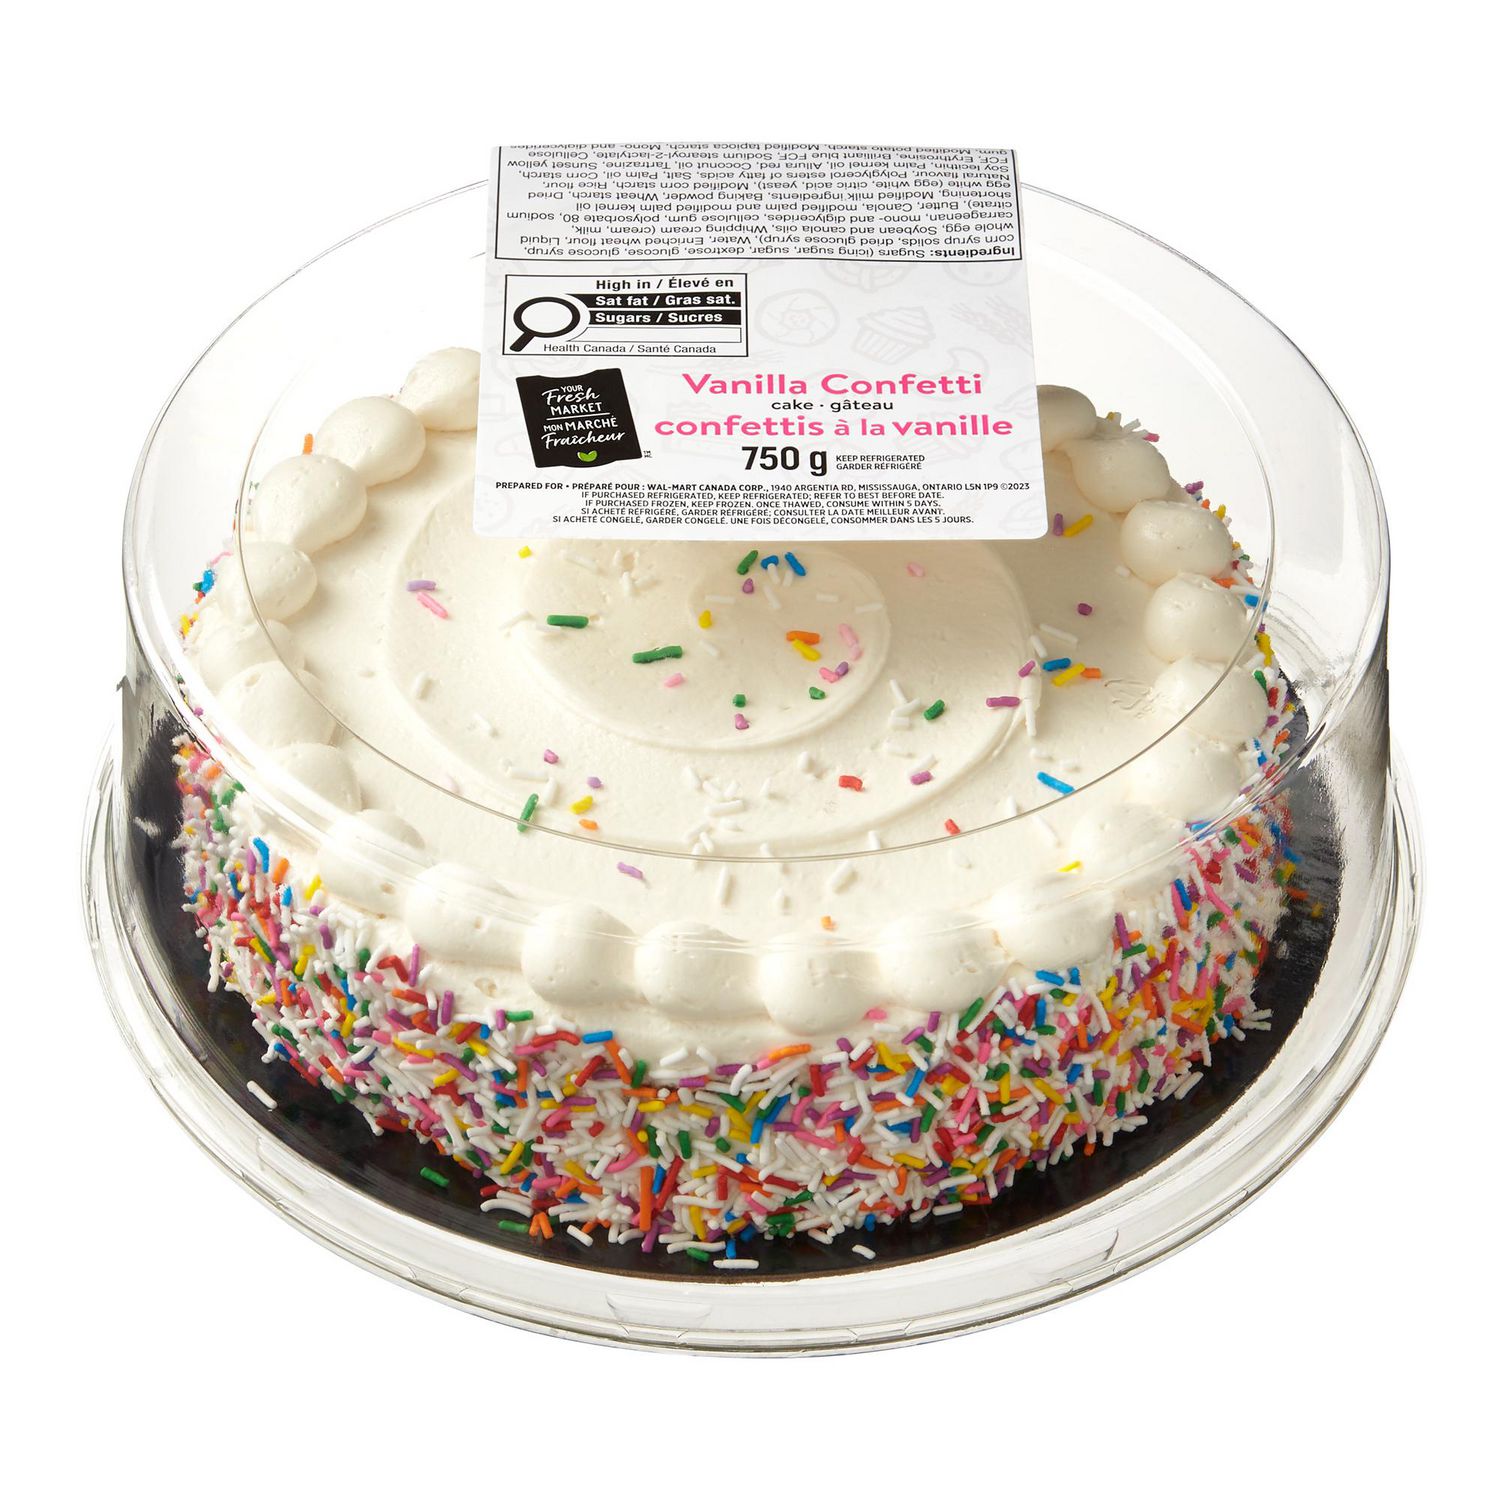 Gâteau d'anniversaire aux confettis - 5 ingredients 15 minutes